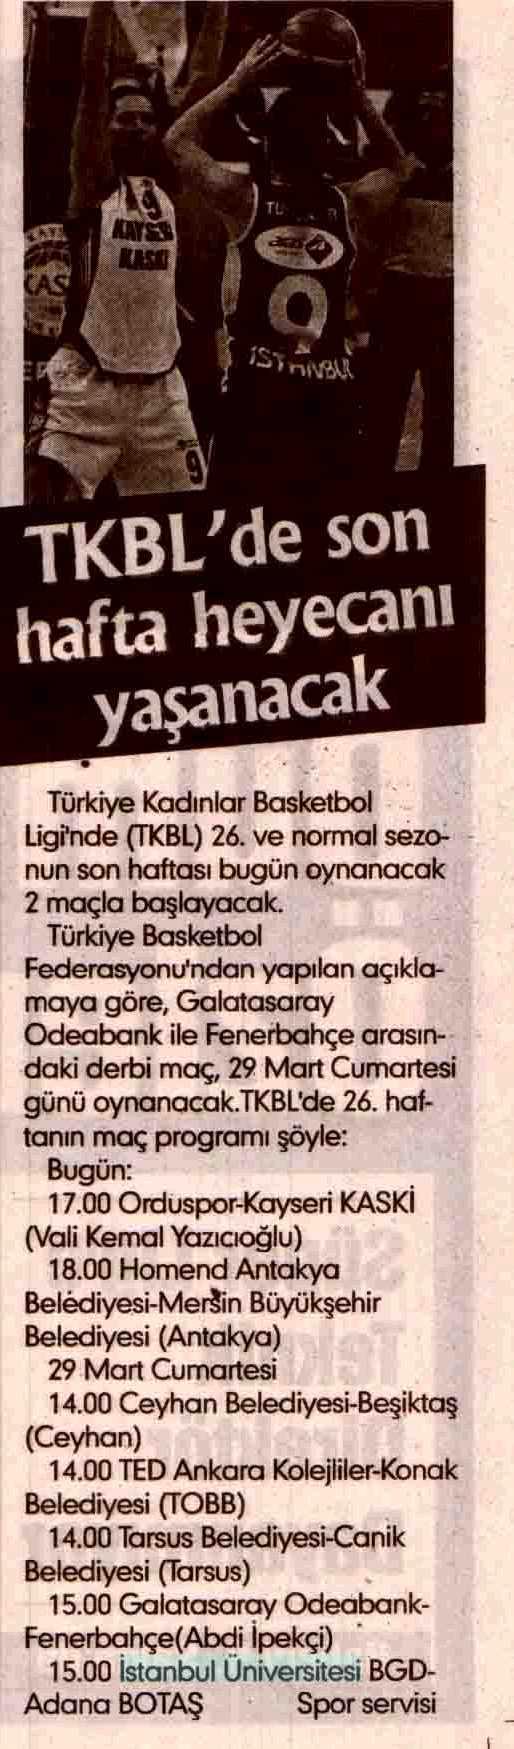 TKBL'DE SON HAFTA HEYECANI YASANACAK Yayın Adı : Ülker Kayseri Gazetesi